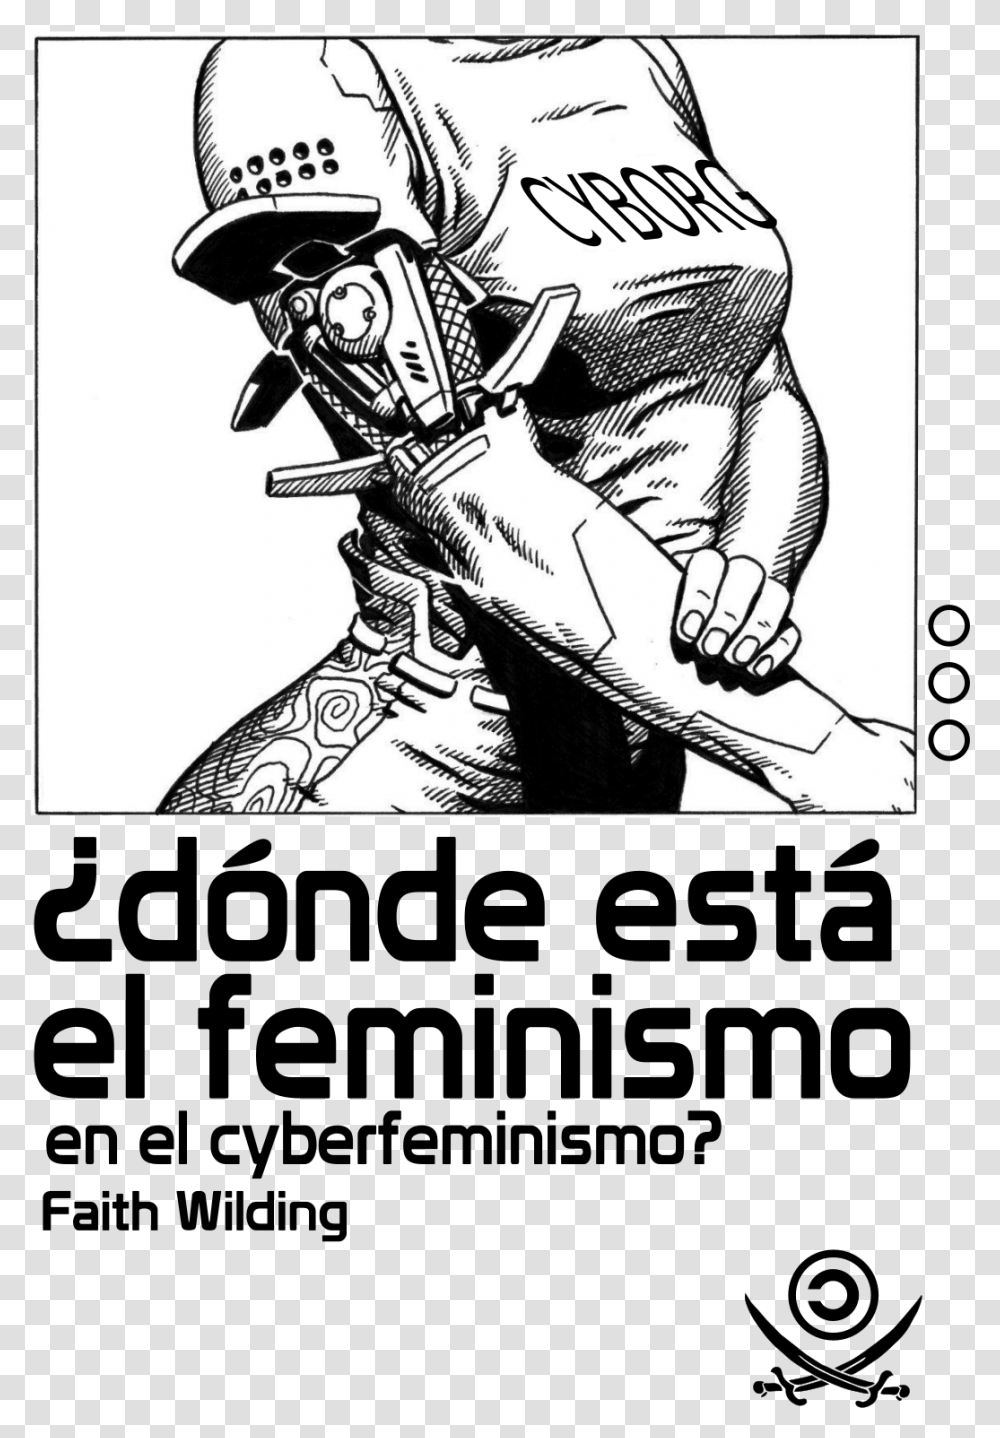 Cubierta De Dnde Est El Feminismo En El Ciberfeminismo Pirata, Comics, Book, Hand, Person Transparent Png